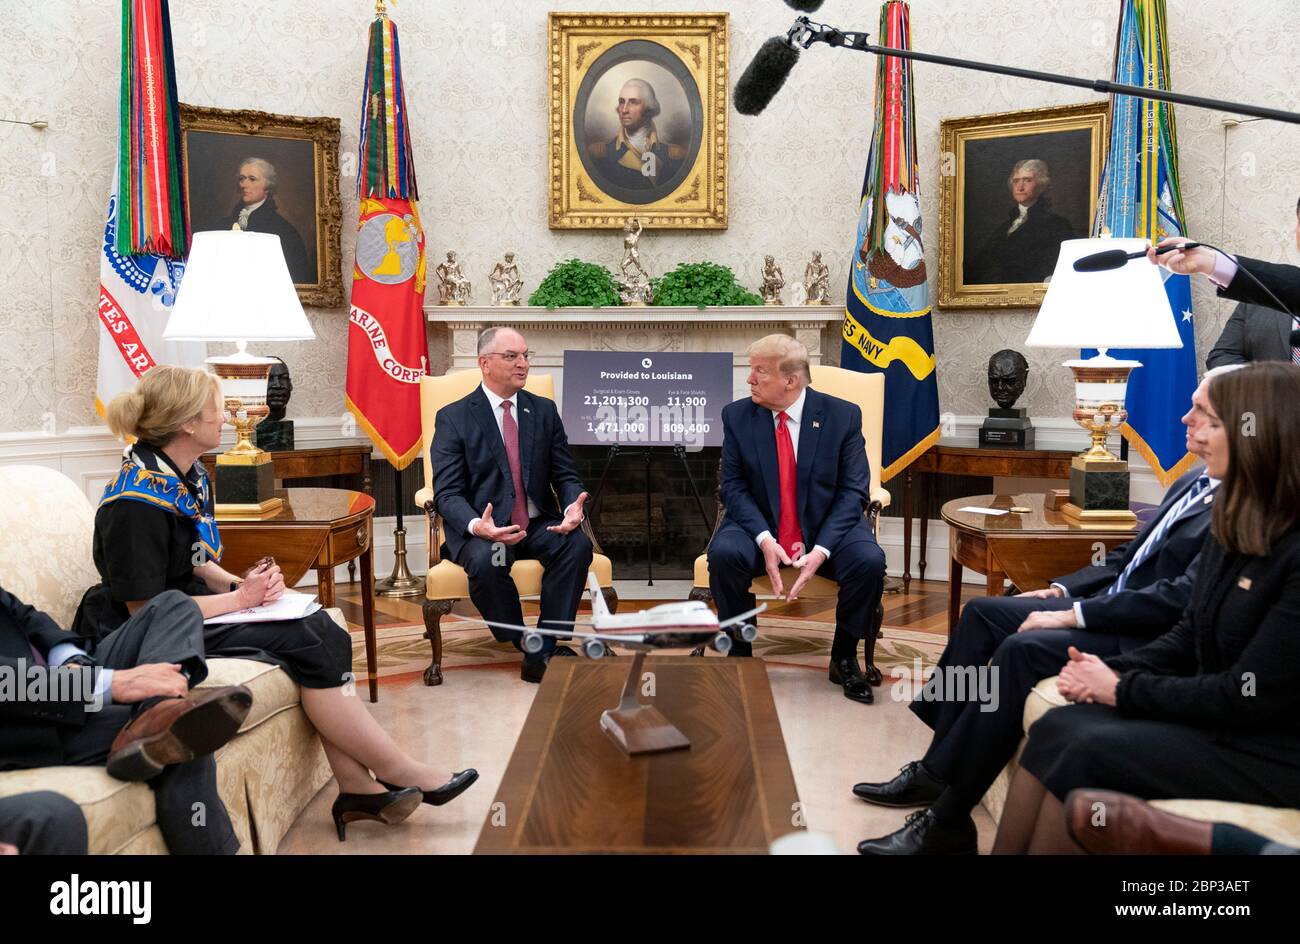 Le président américain Donald Trump rencontre le gouvernement de la Louisiane. John Bel Edwards discutera de la pandémie de coronavirus COVID-19 dans le Bureau ovale de la Maison Blanche le 29 avril 2020 à Washington, D.C. Banque D'Images